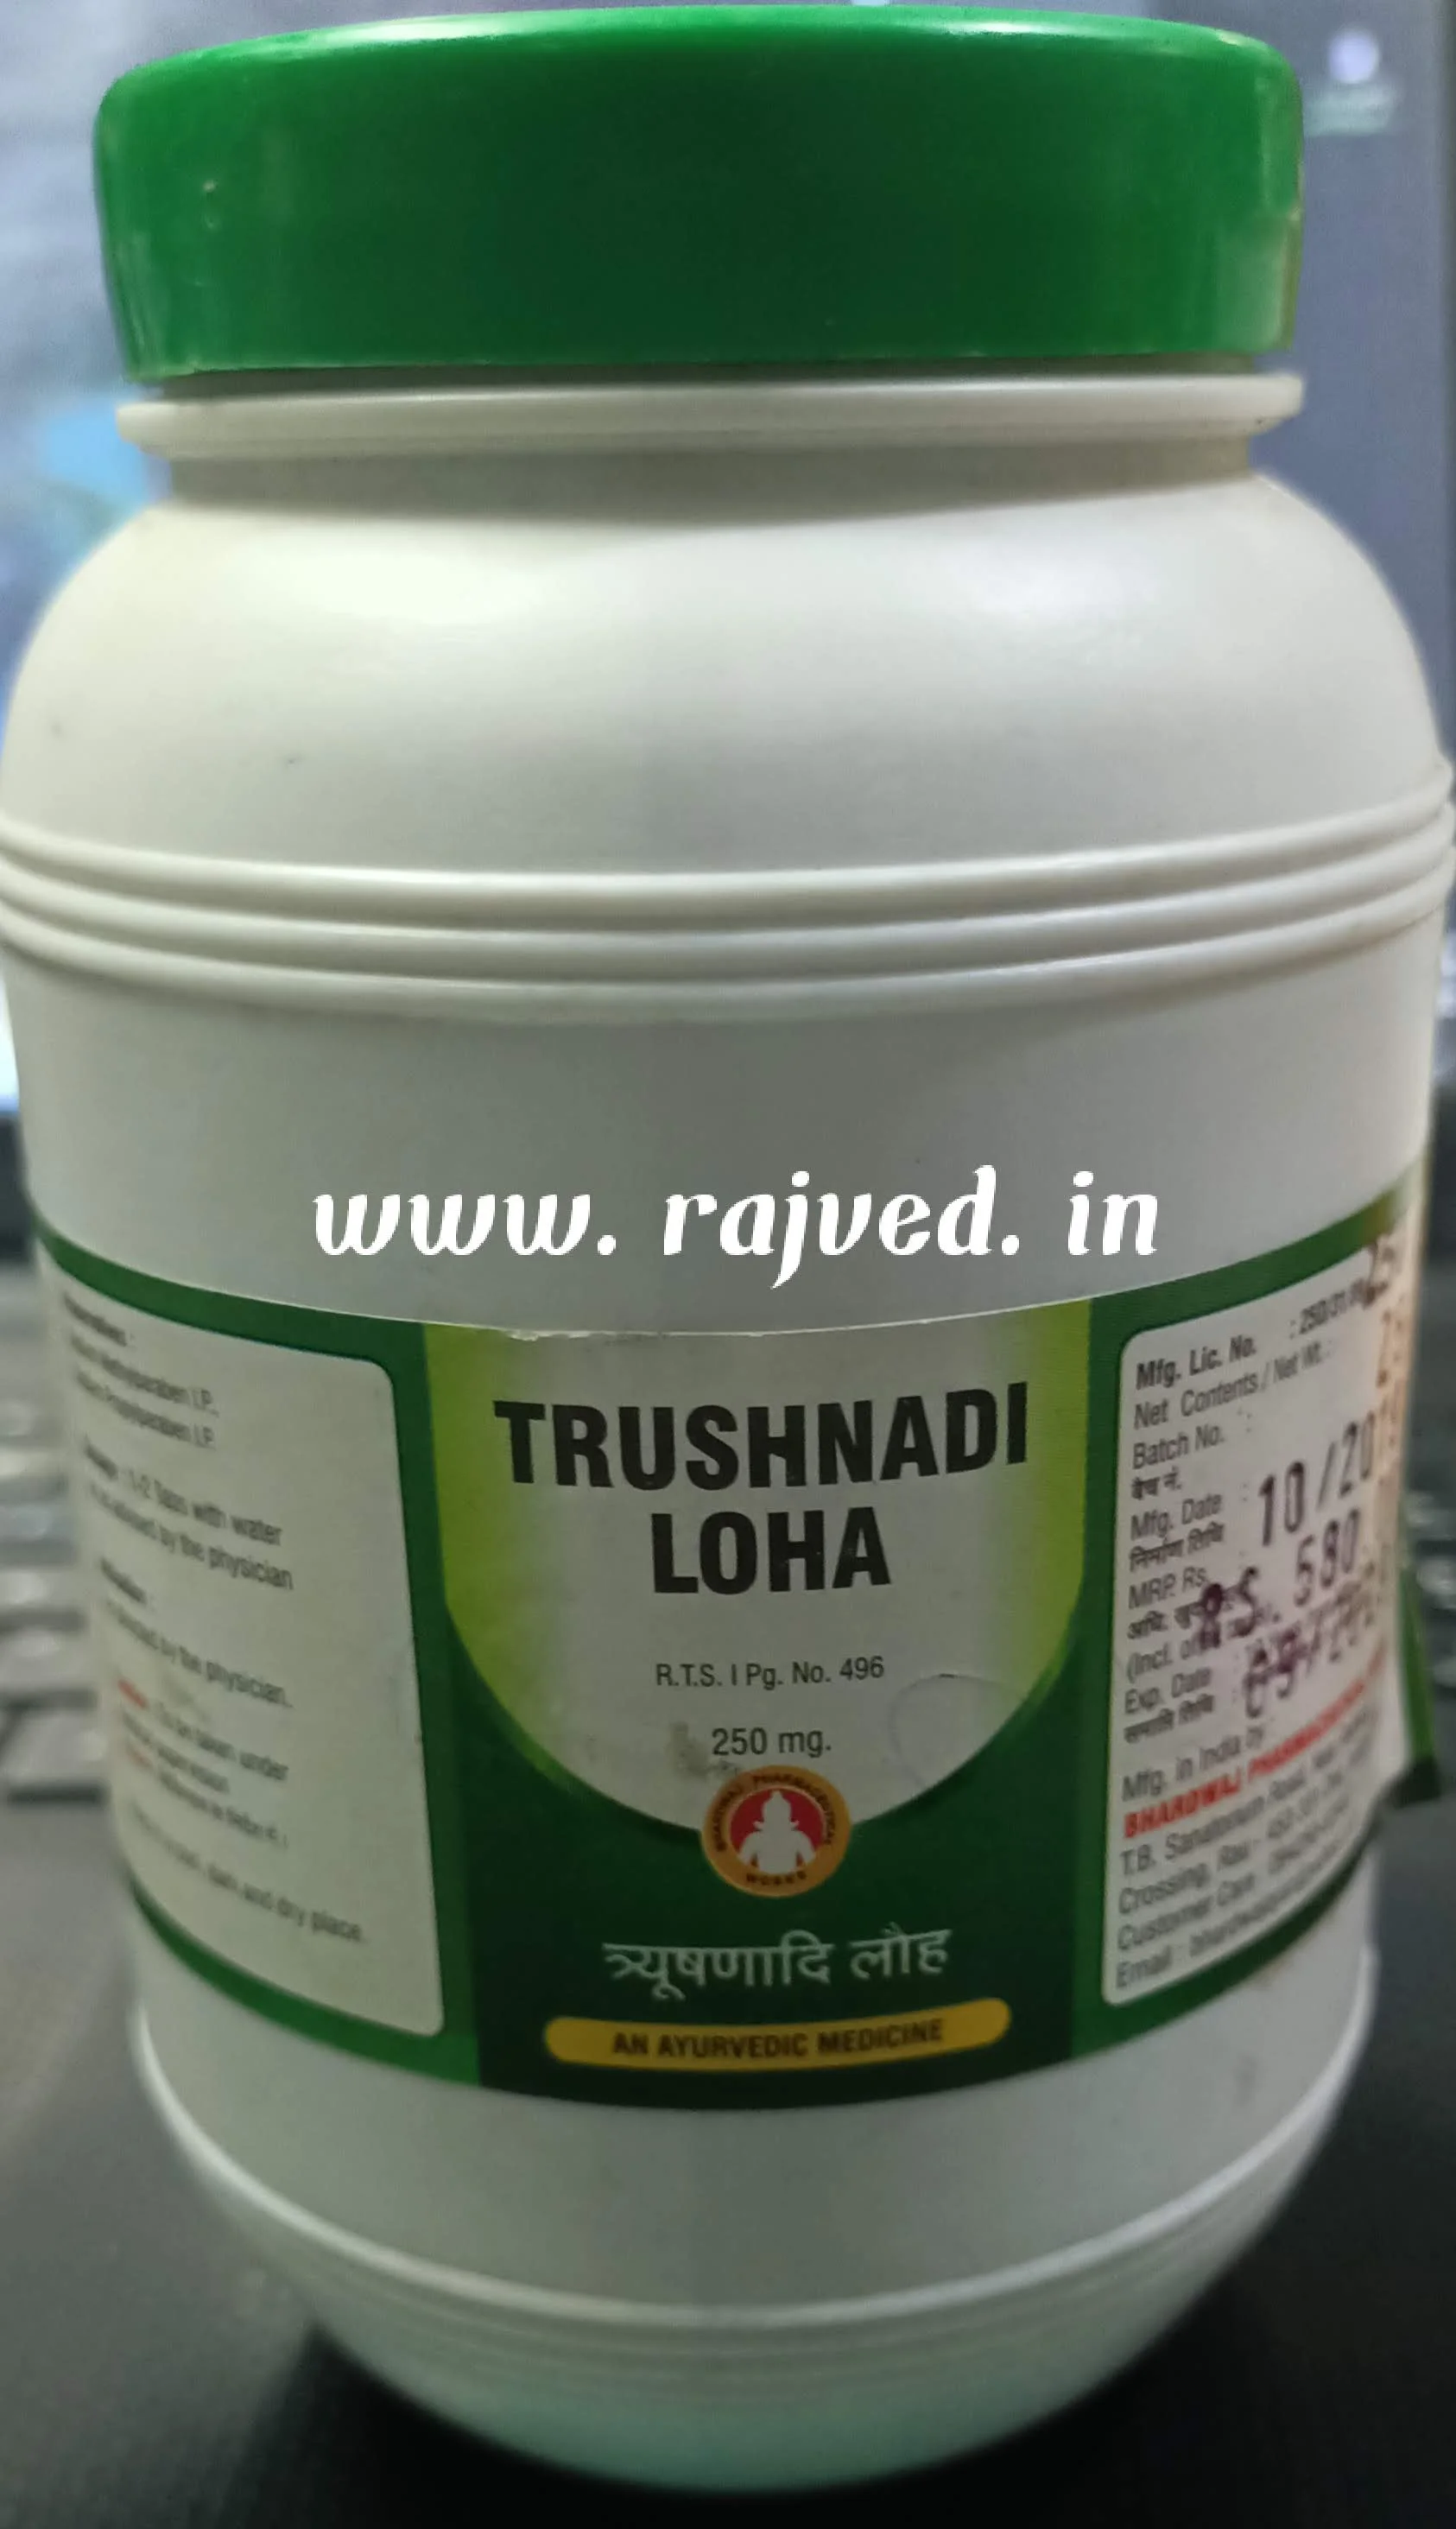 trushnadi loha 1 kg upto 10% off Bharadwaj Pharmaceuticals Indore